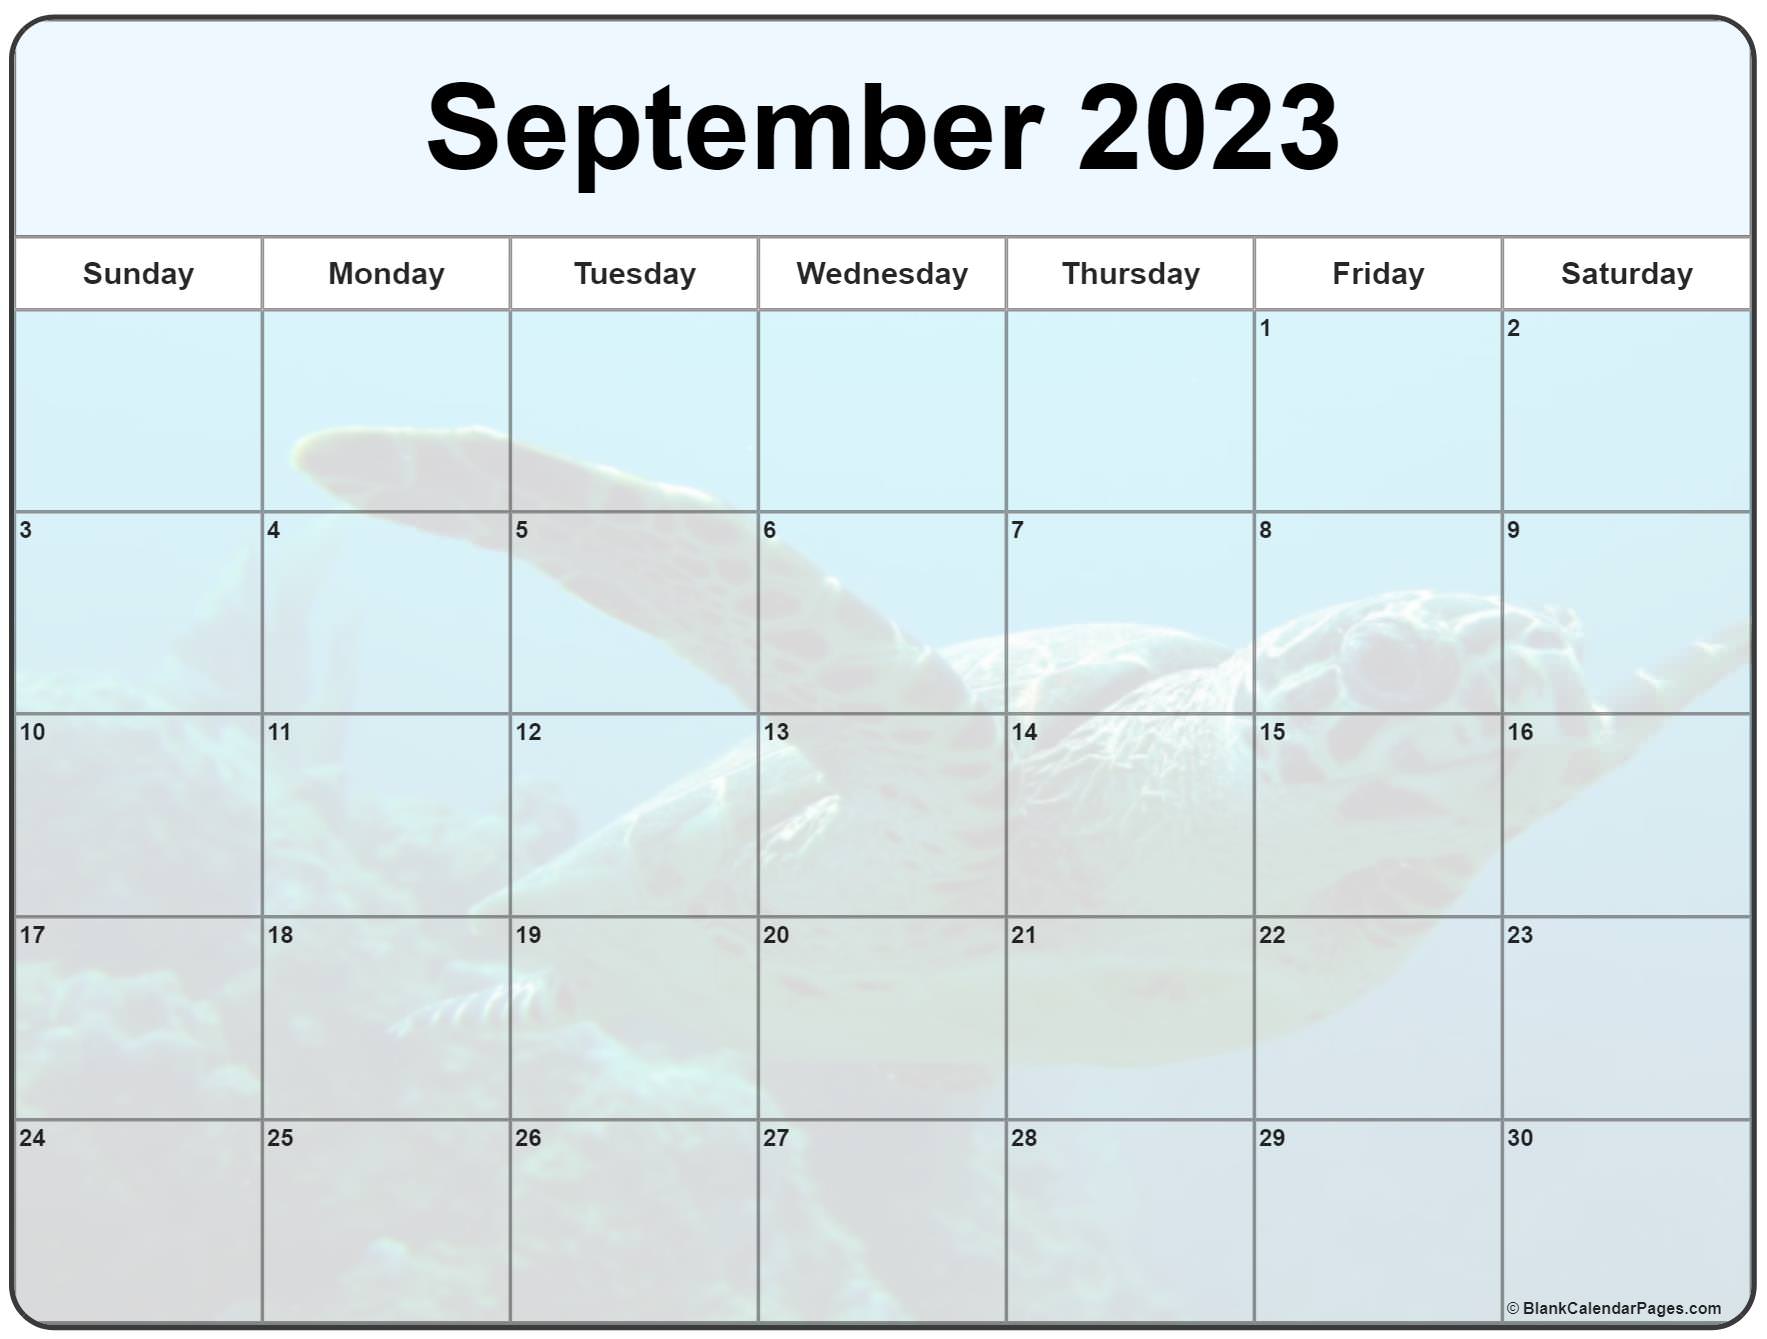 september-2023-calendar-desktop-wallpaper-2023-cool-latest-list-of